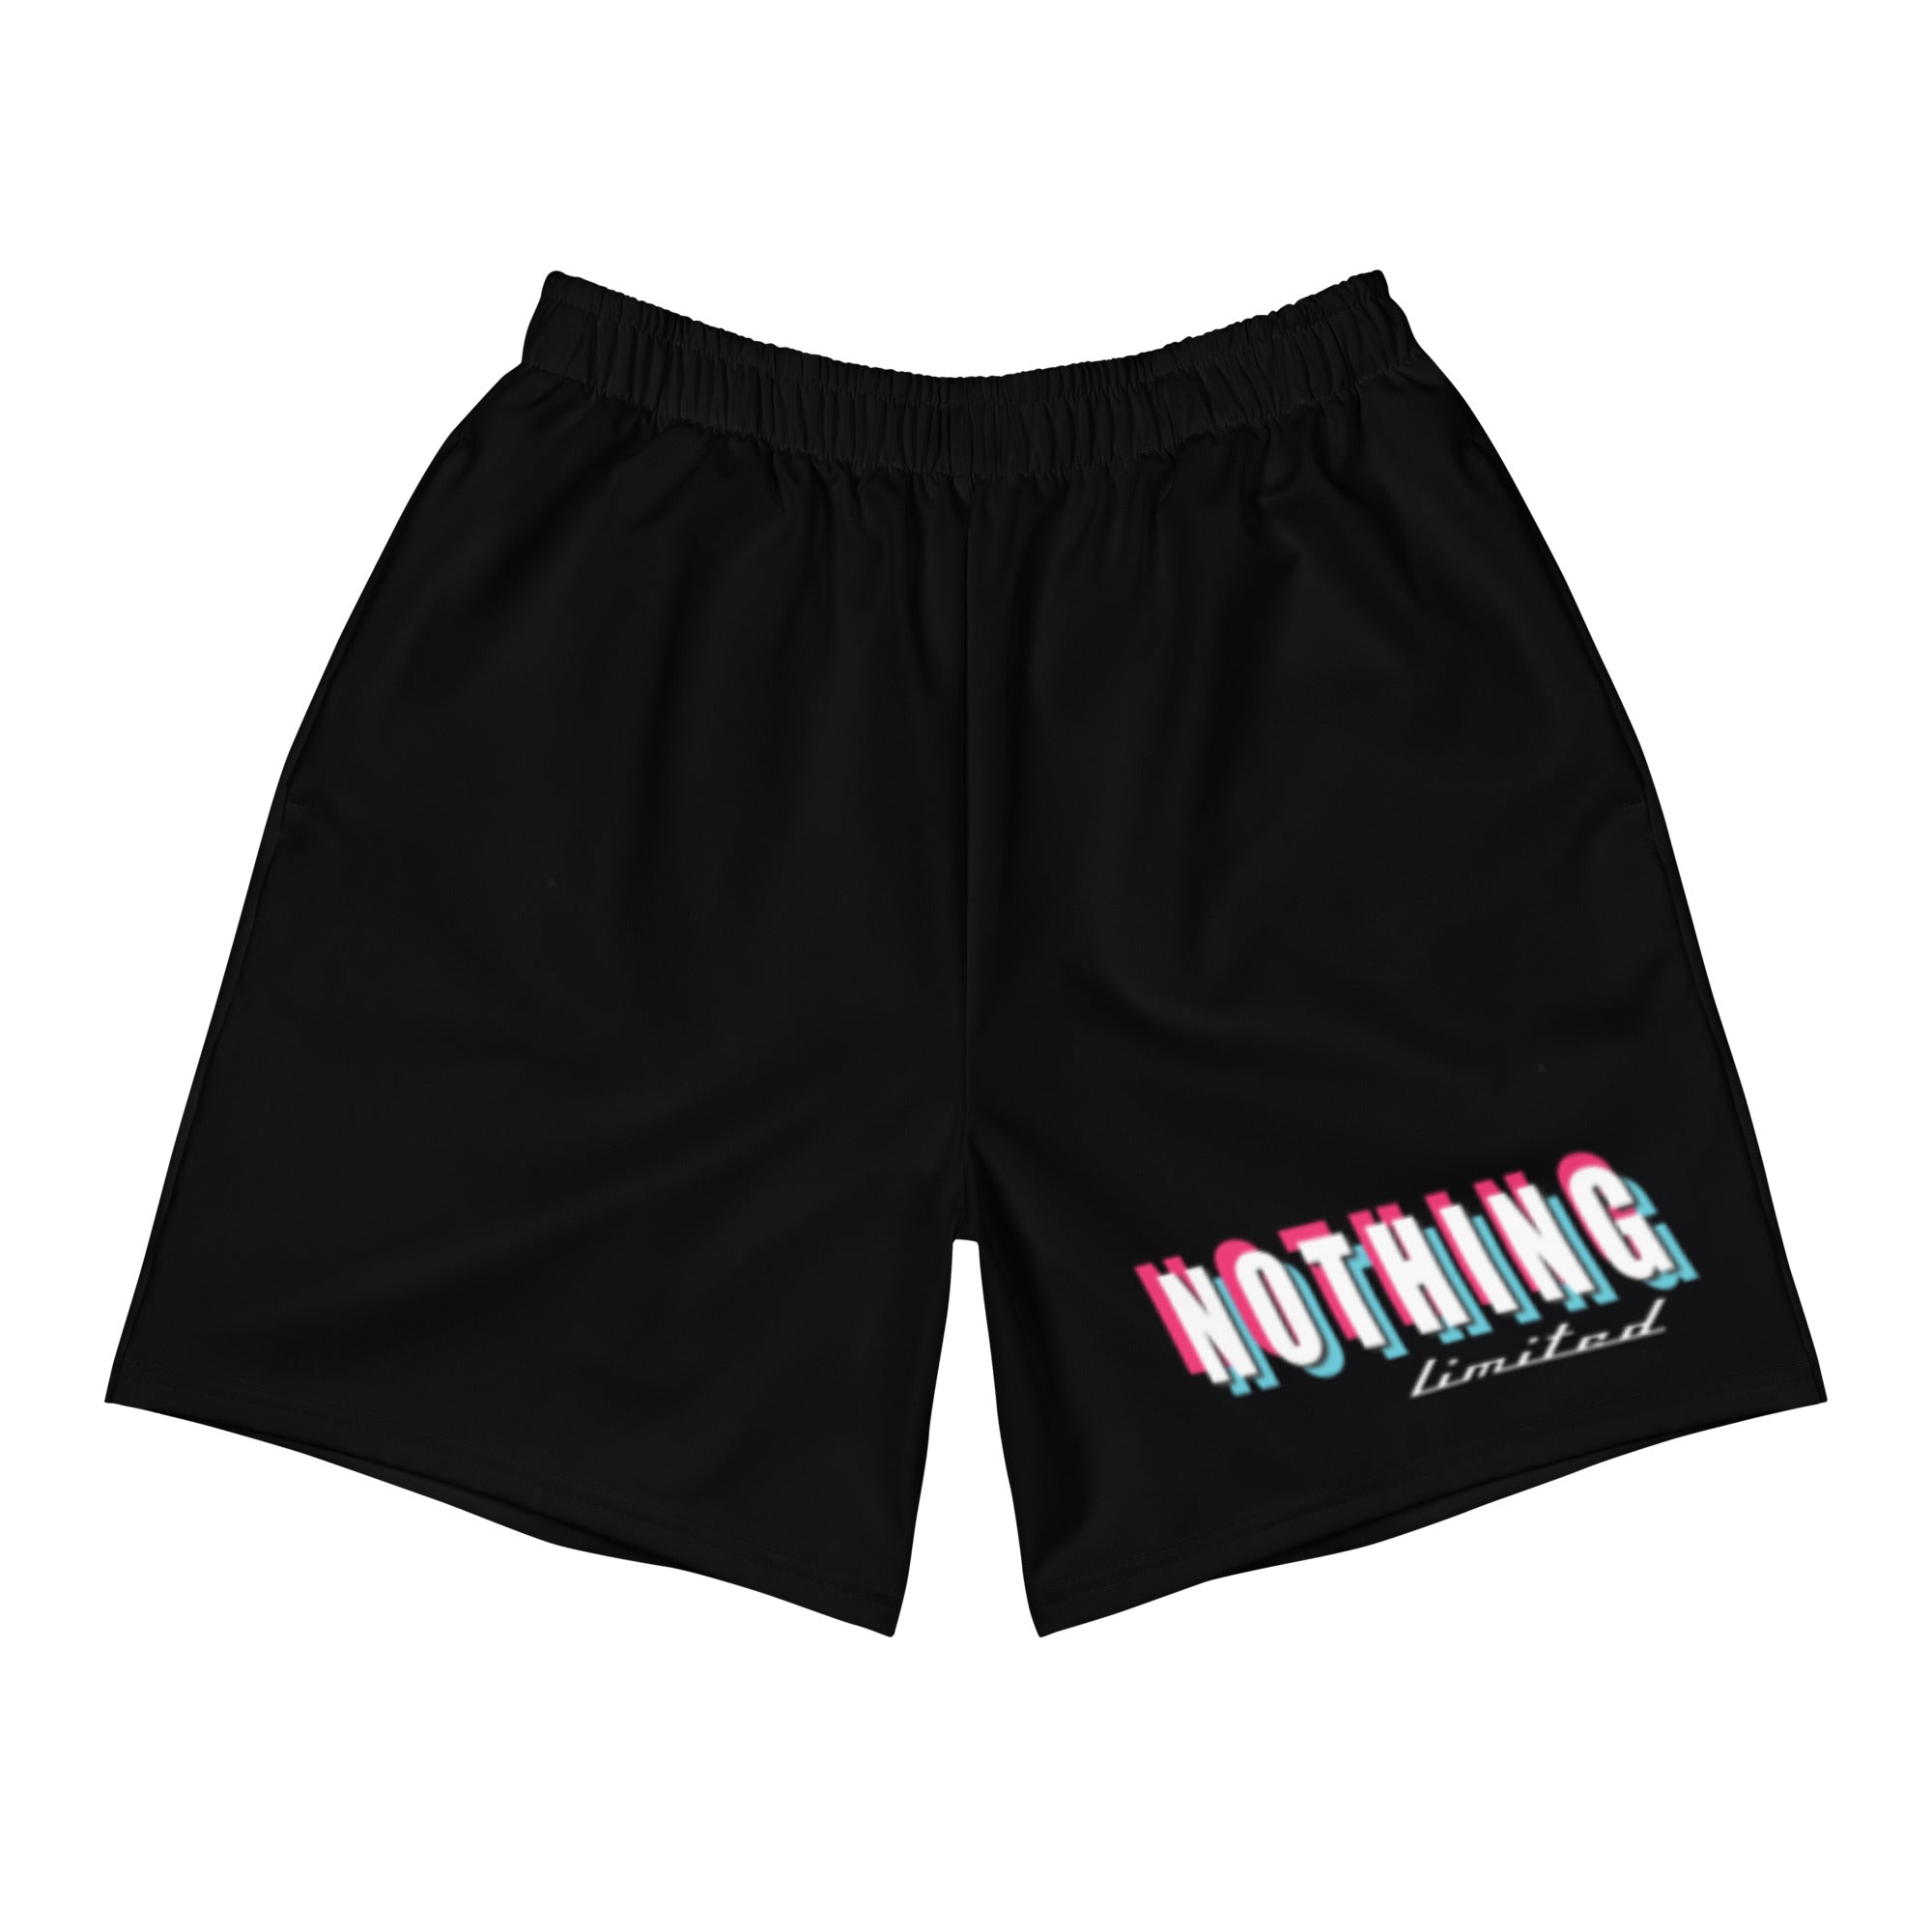 “GO FAST” hybrid shorts